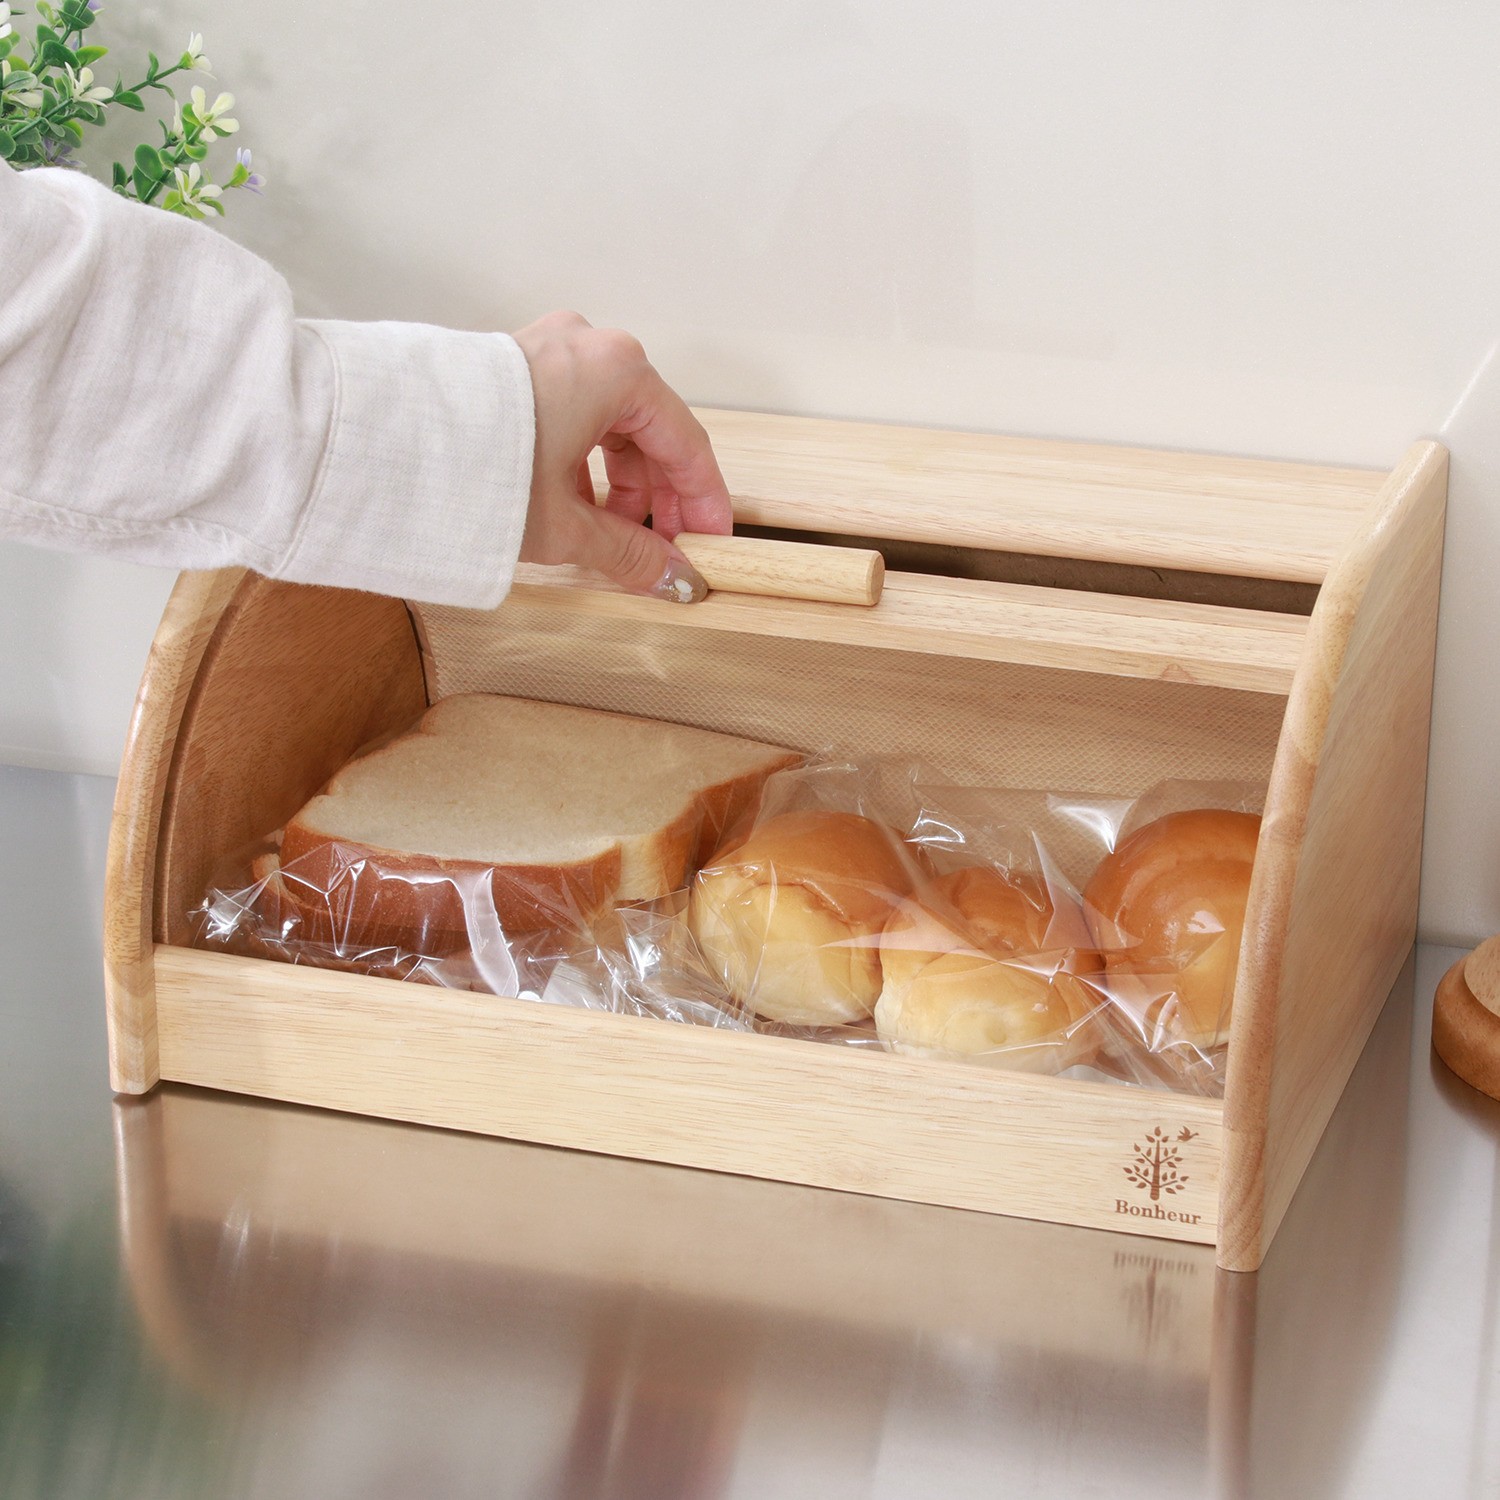 ブレッドケース パンケース おしゃれ 木製 ナチュラル キッチン 収納 